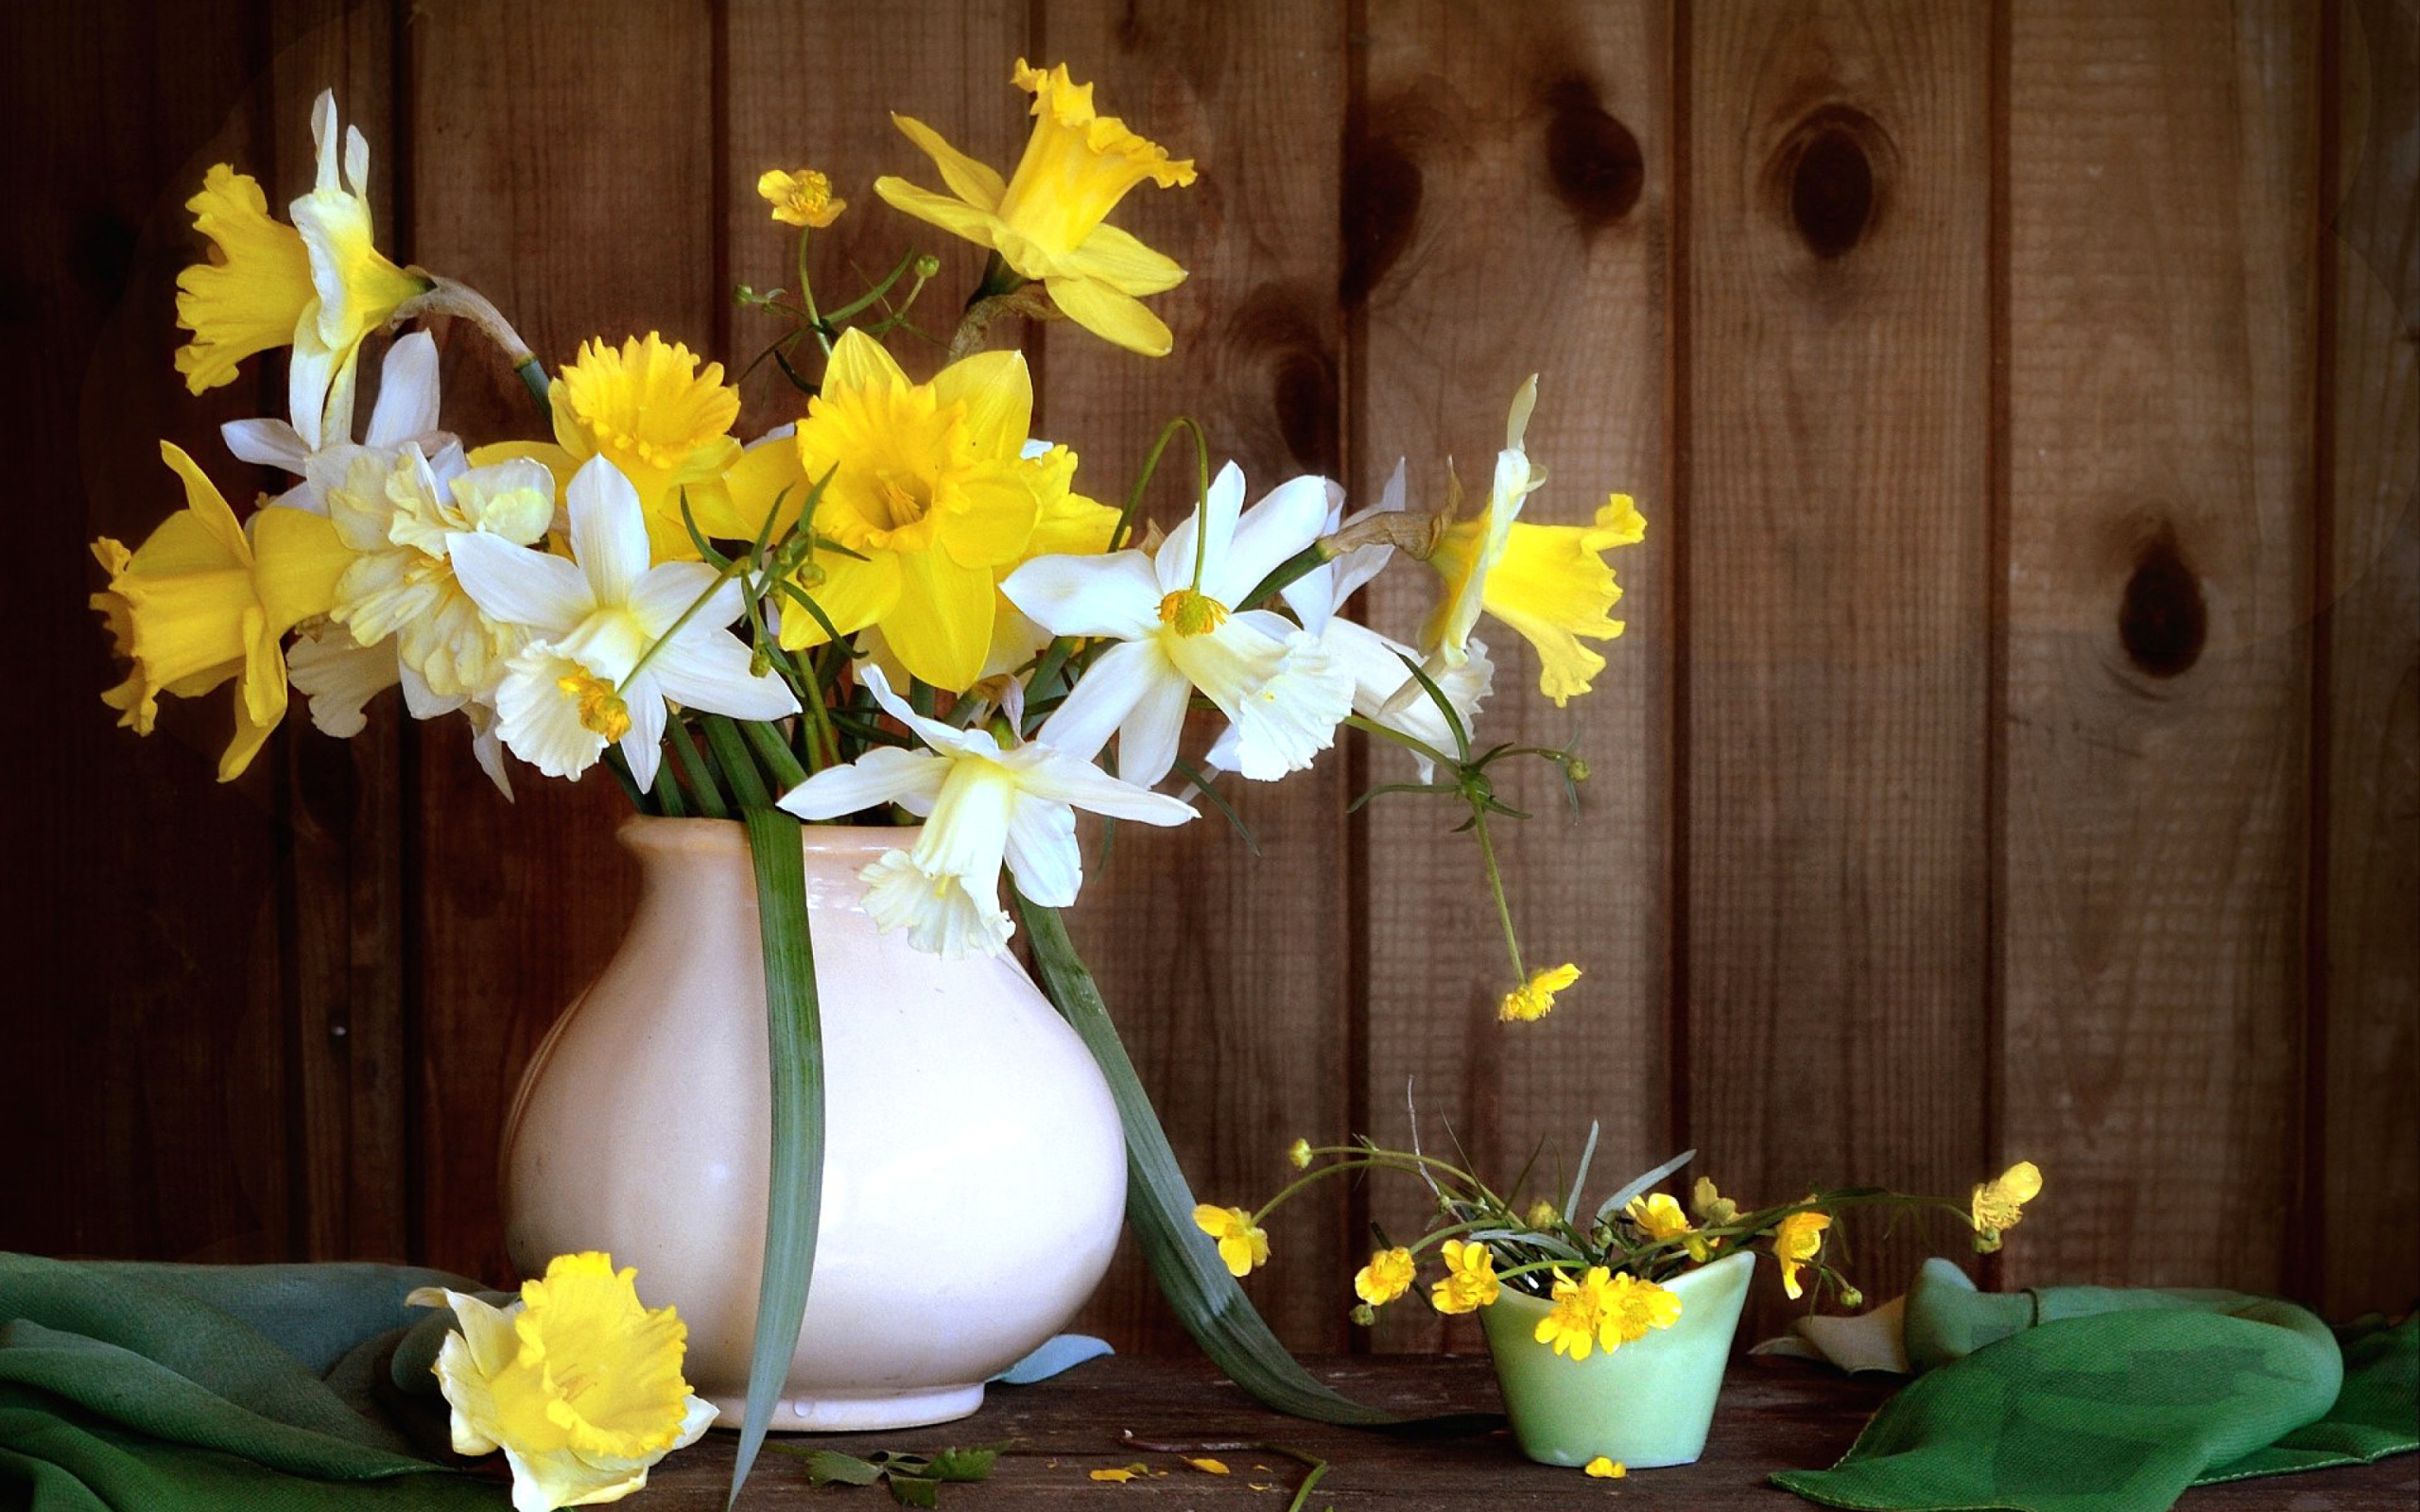 Daffodil Jug wallpaper 2560x1600